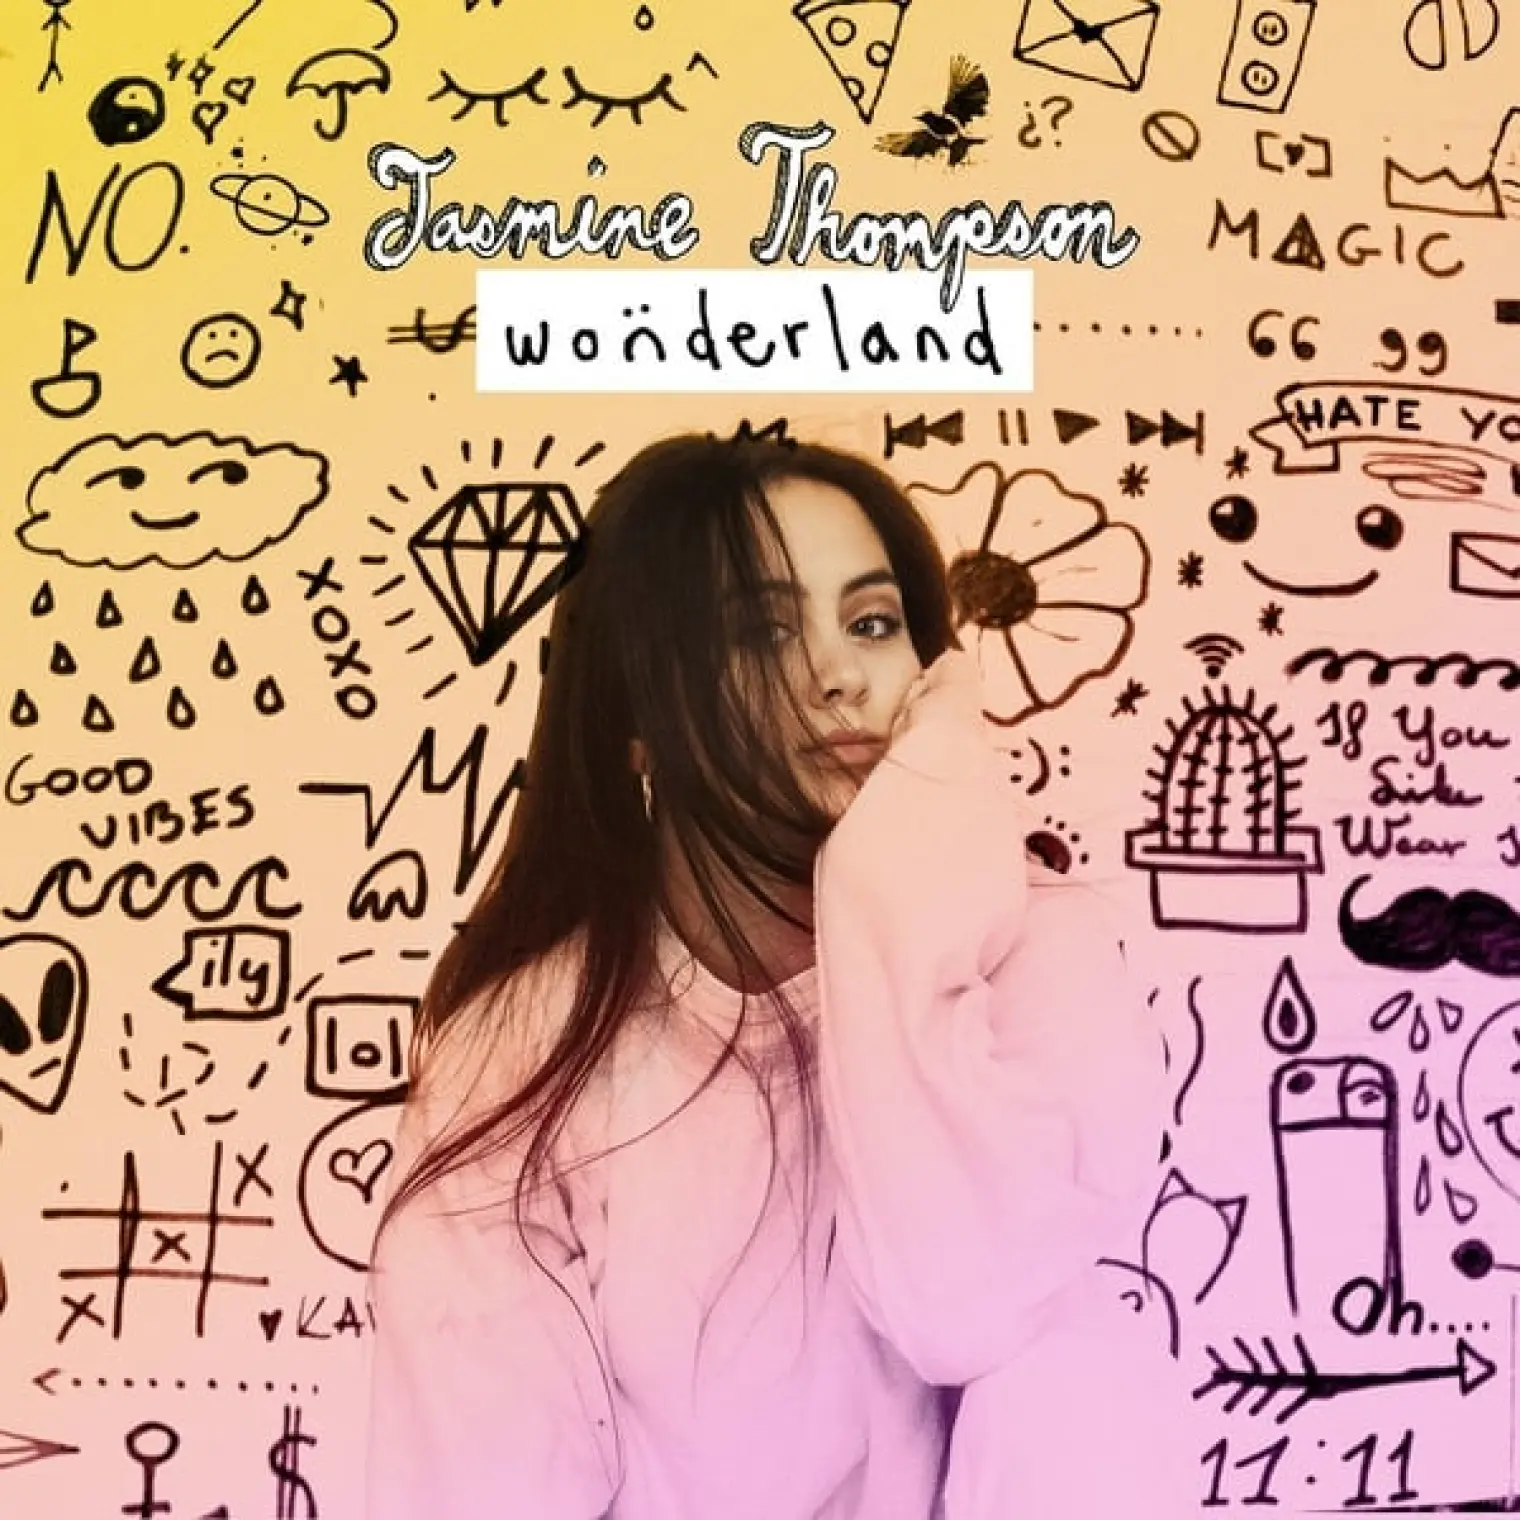 Wonderland (intro) -  Jasmine Thompson 